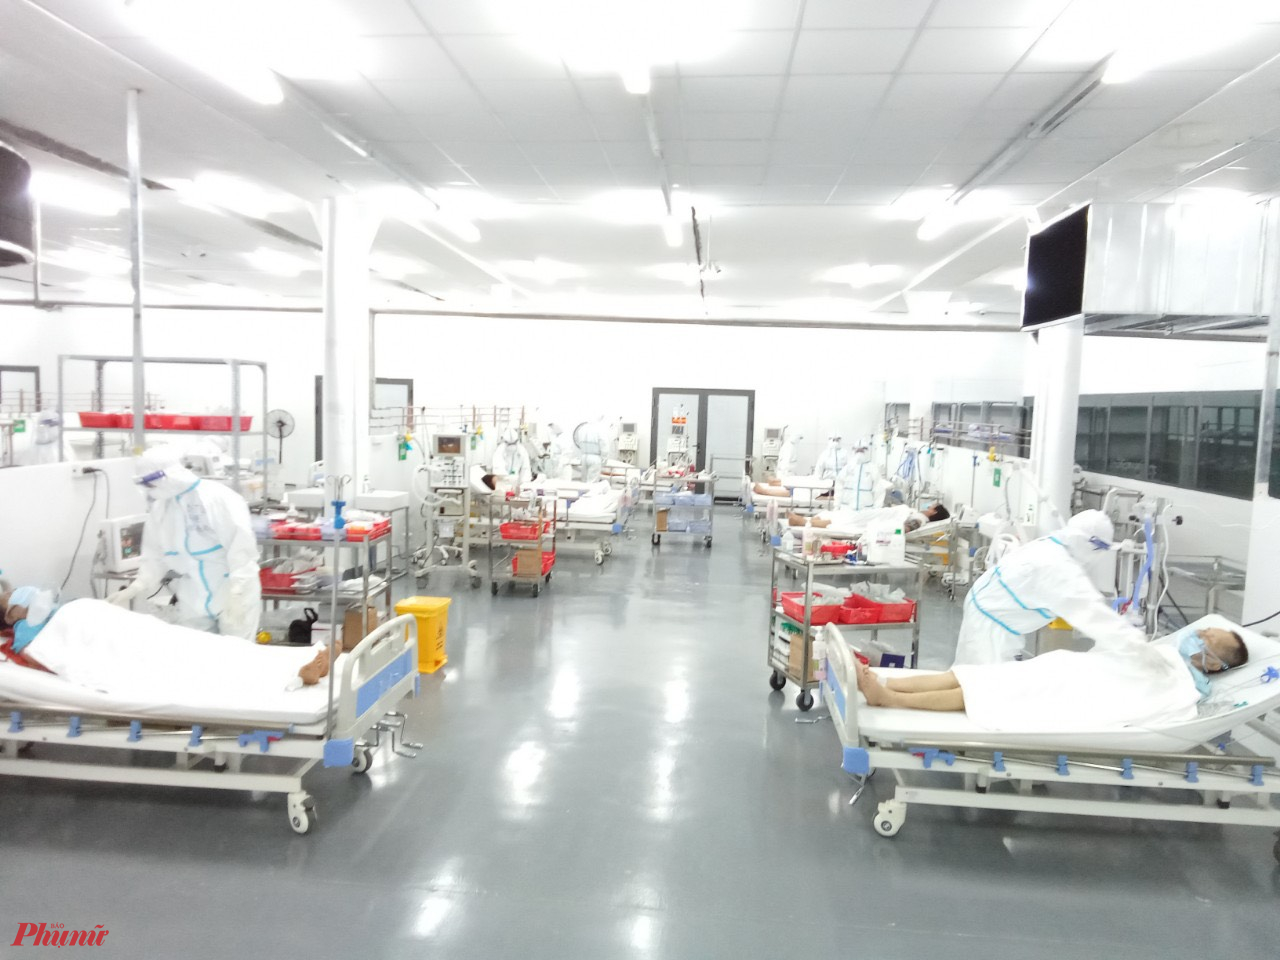 Trung tâm Hồi sức tích cực người bệnh COVID-19 do Bệnh viện T.Ư Huế điều hành còn được trang bị các trang thiết bị quan trọng phục vụ cho công tác điều trị như máy thở chức năng cao, hệ thống thở oxy lưu lượng cao, máy lọc máu, máy ECMO